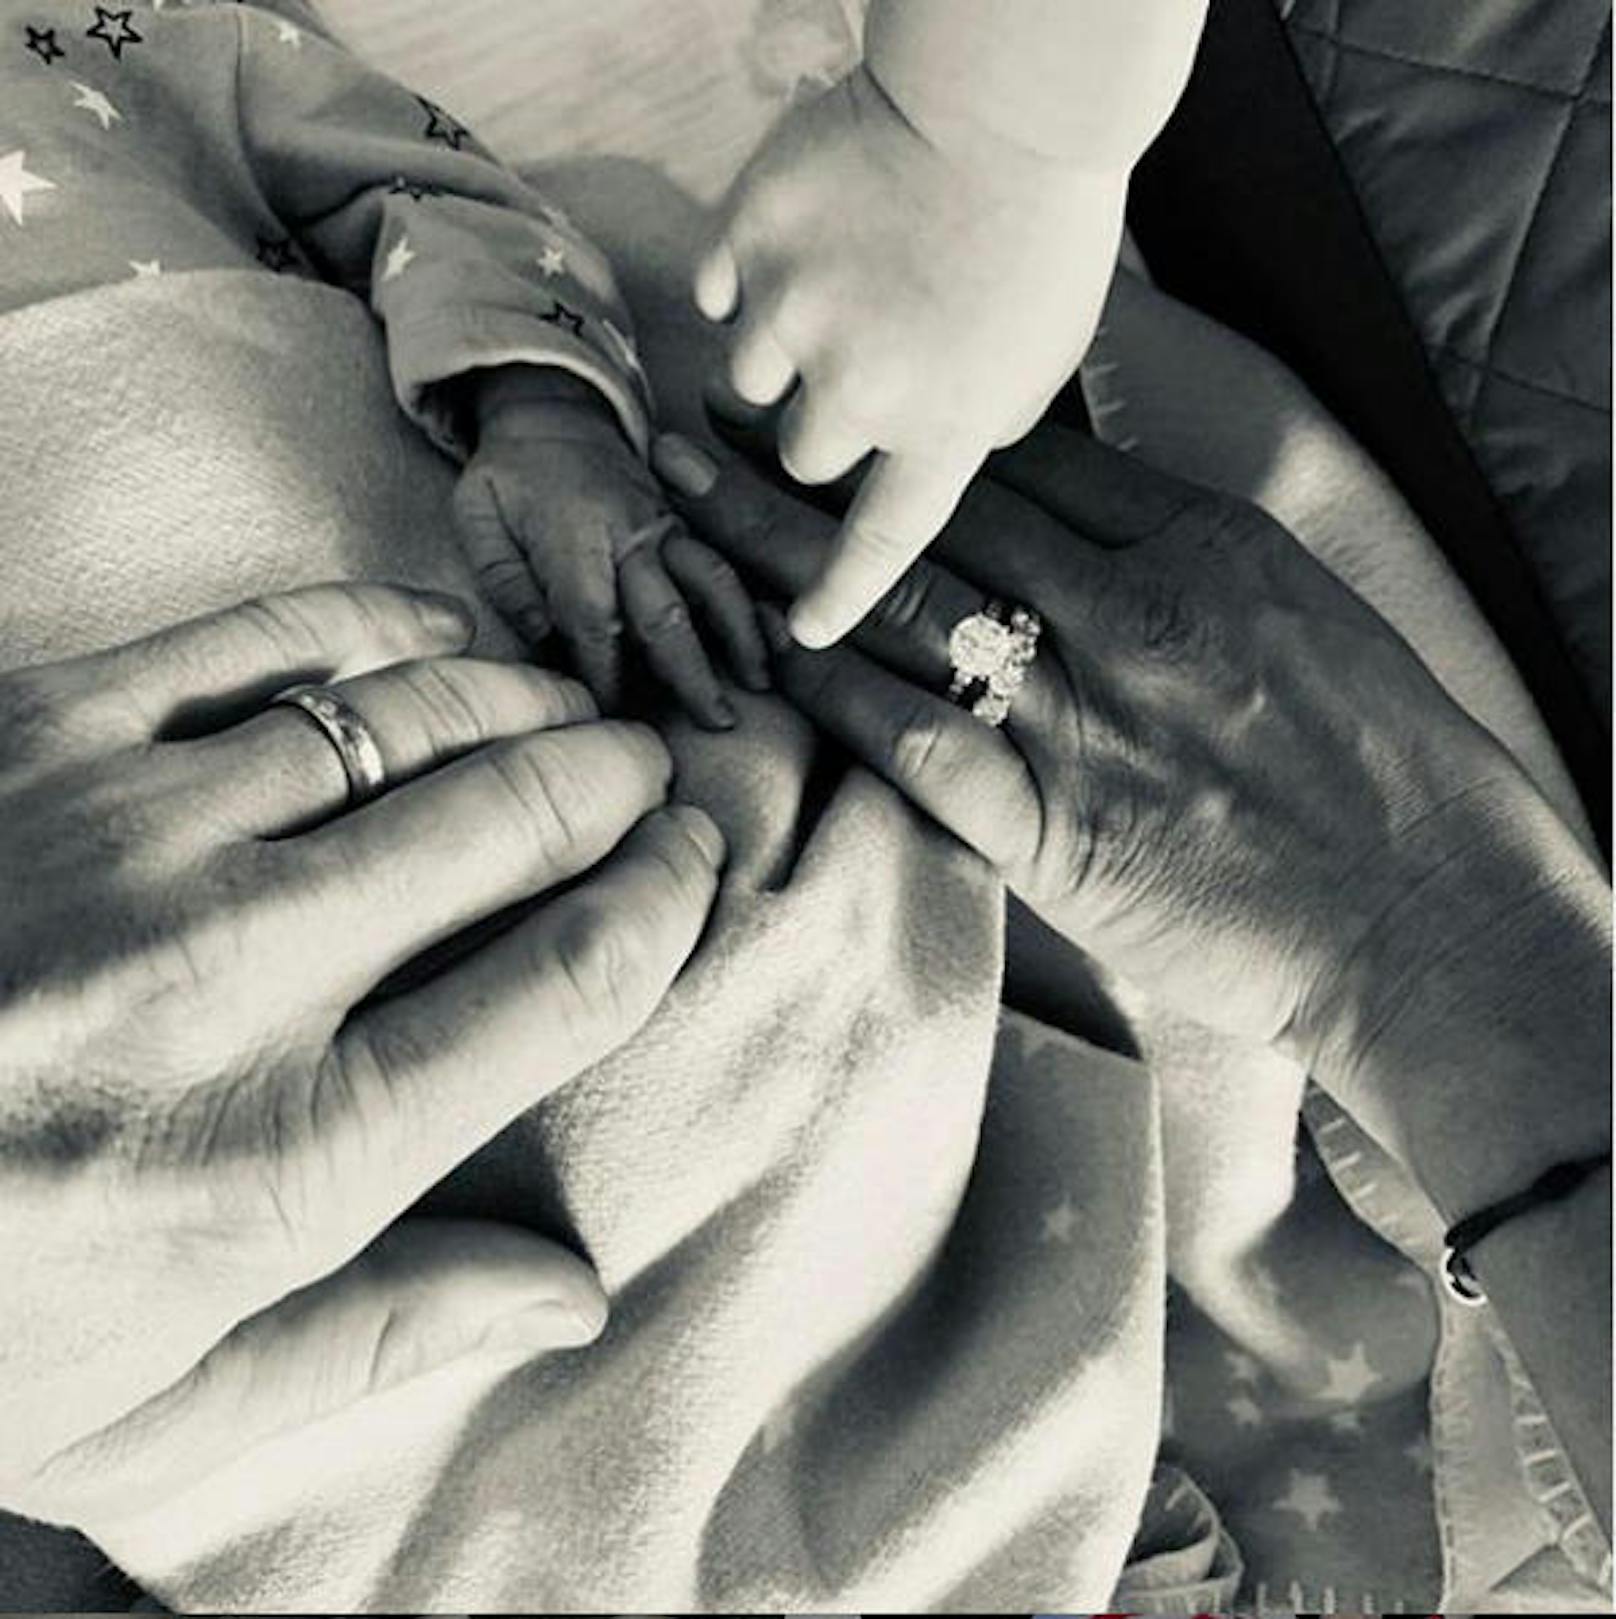 31.08.2019: Fußball-Star Bastian Schweinsteiger und seine Frau Ana Ivanovic sind zum zweiten Mal Eltern geworden. Die freudige Nachricht gab das Paar via Instagram bekannt.